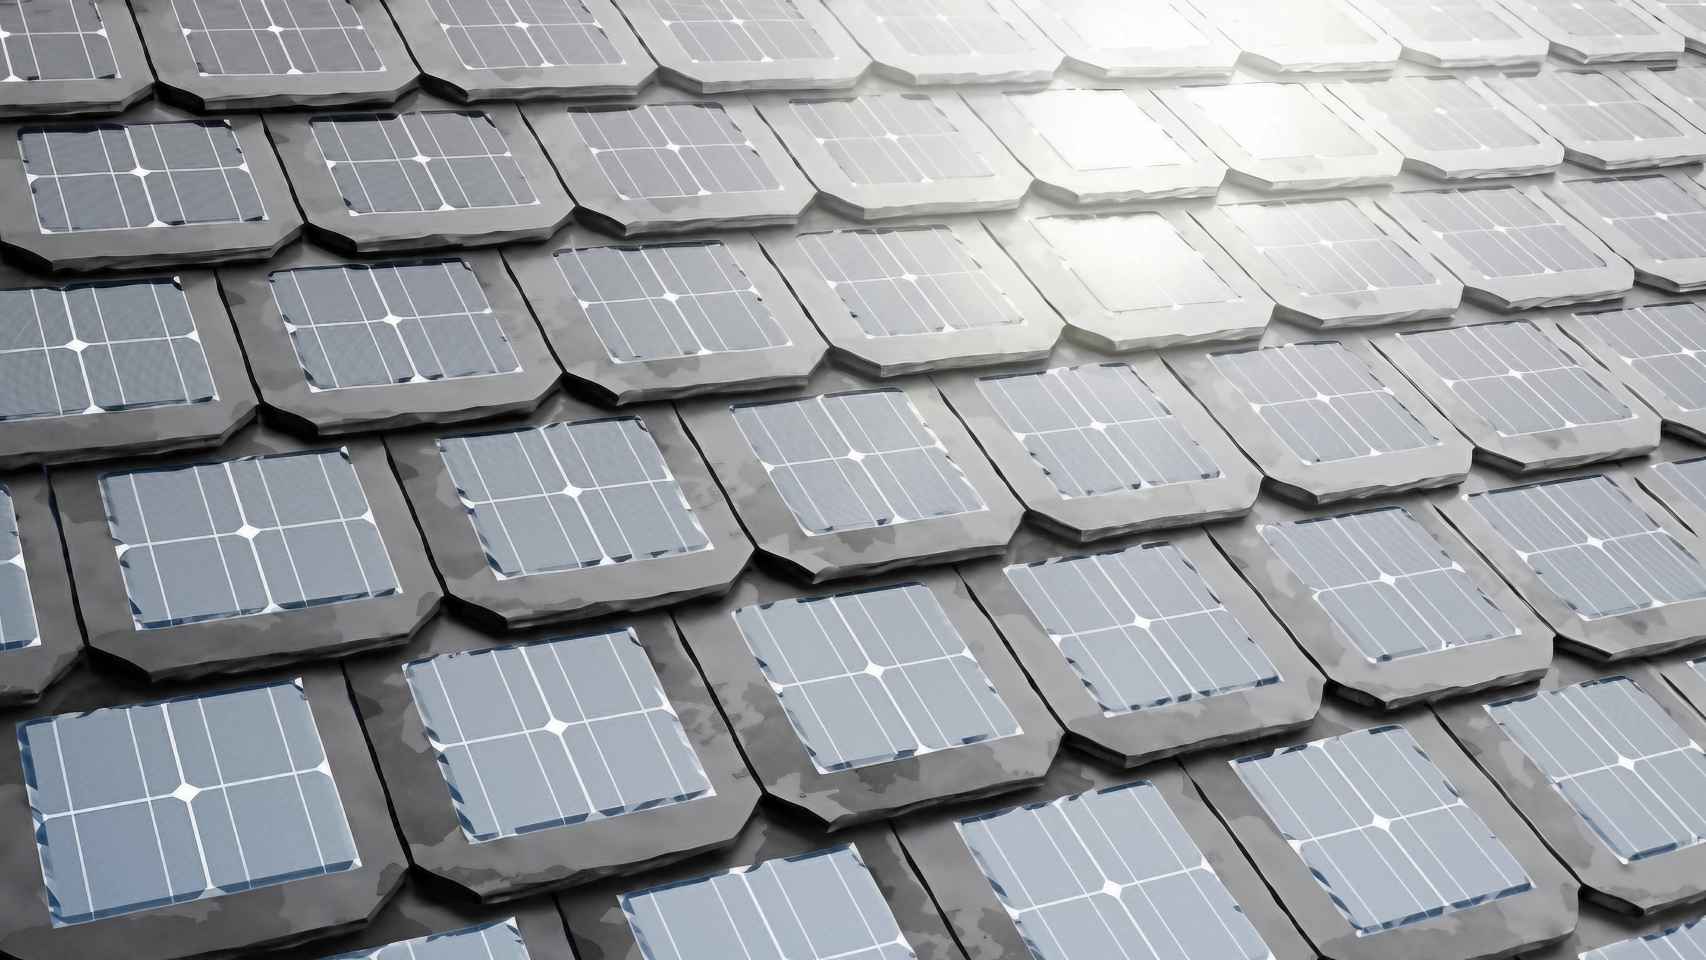 Las revolucionarias placas solares con rendimiento impresionante: así  logran disparar su eficiencia